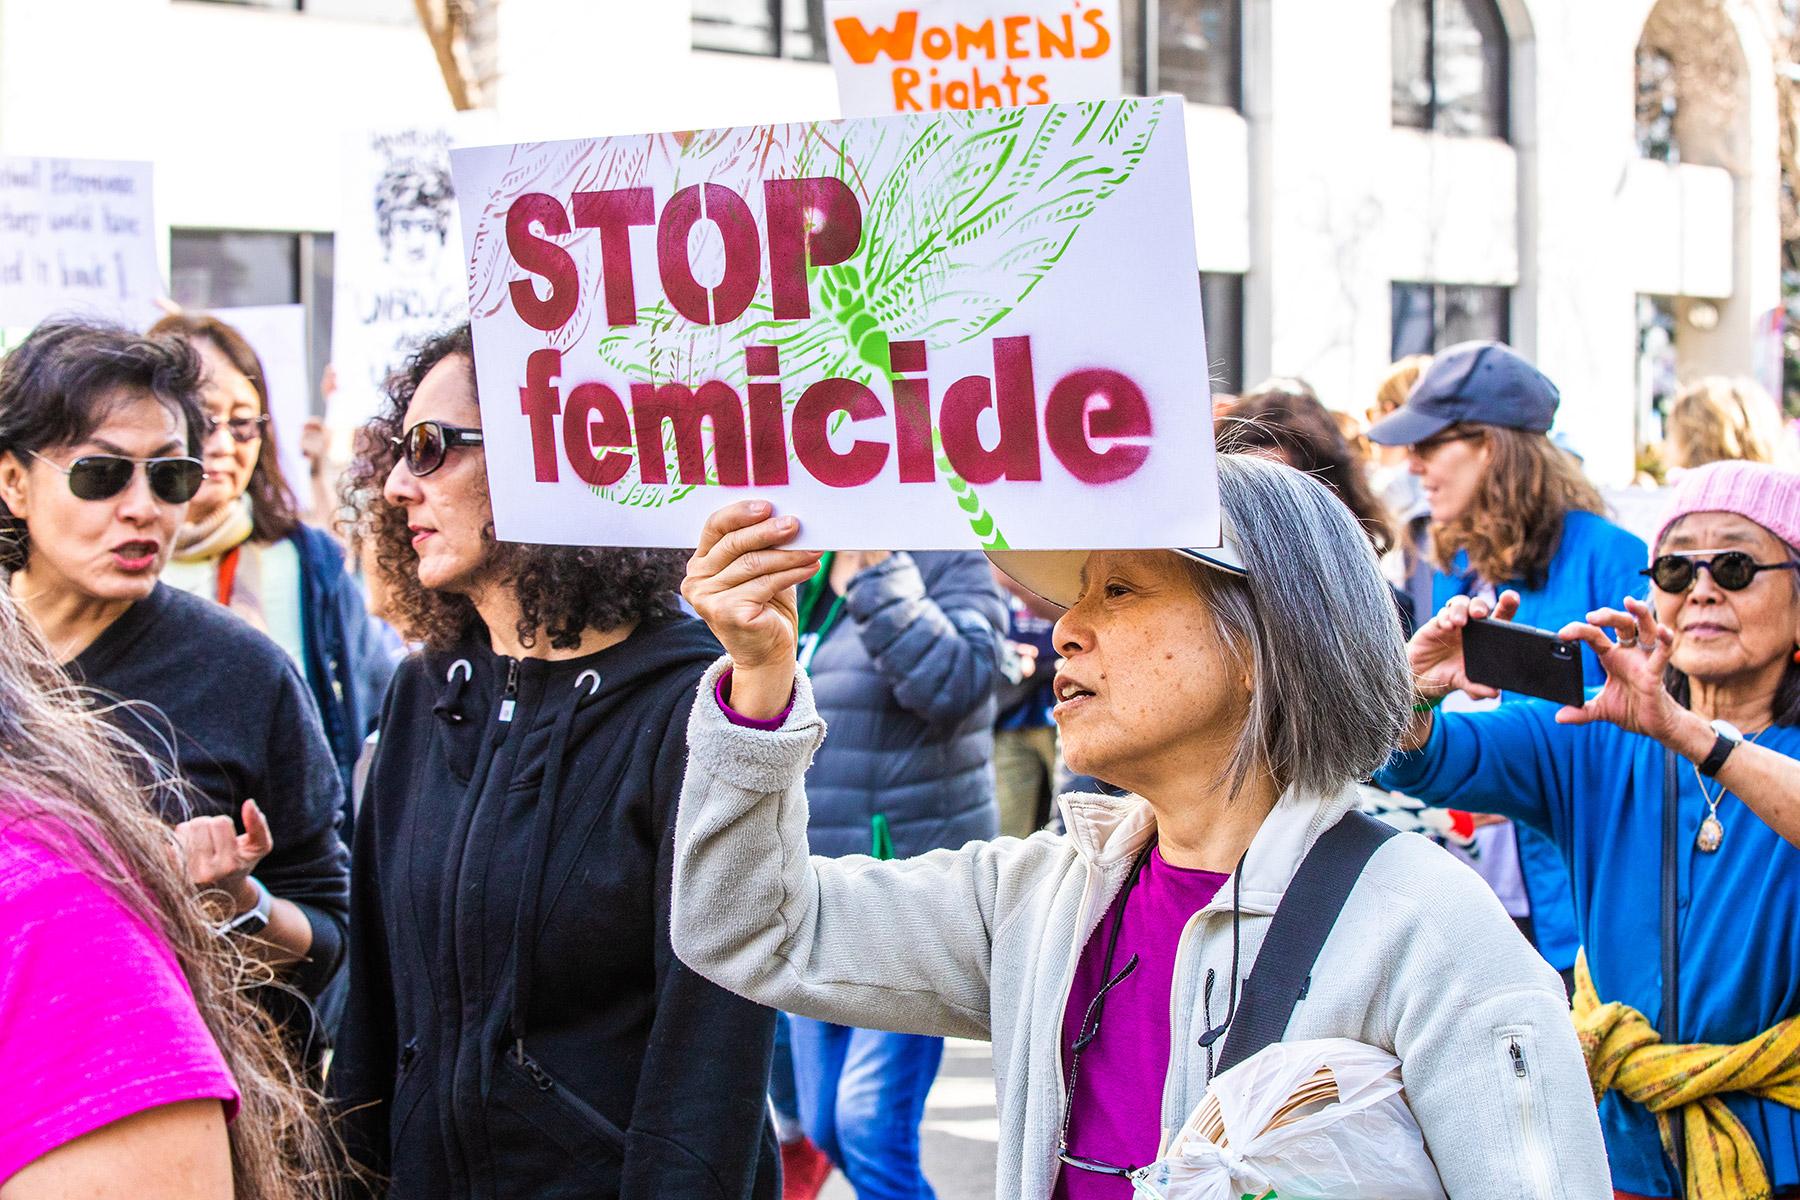 Teilnehmerinnen einer Demonstration in Oakland, USA, im Jahr 2019. Foto: Thomas Hawk (CC-BY-NC)